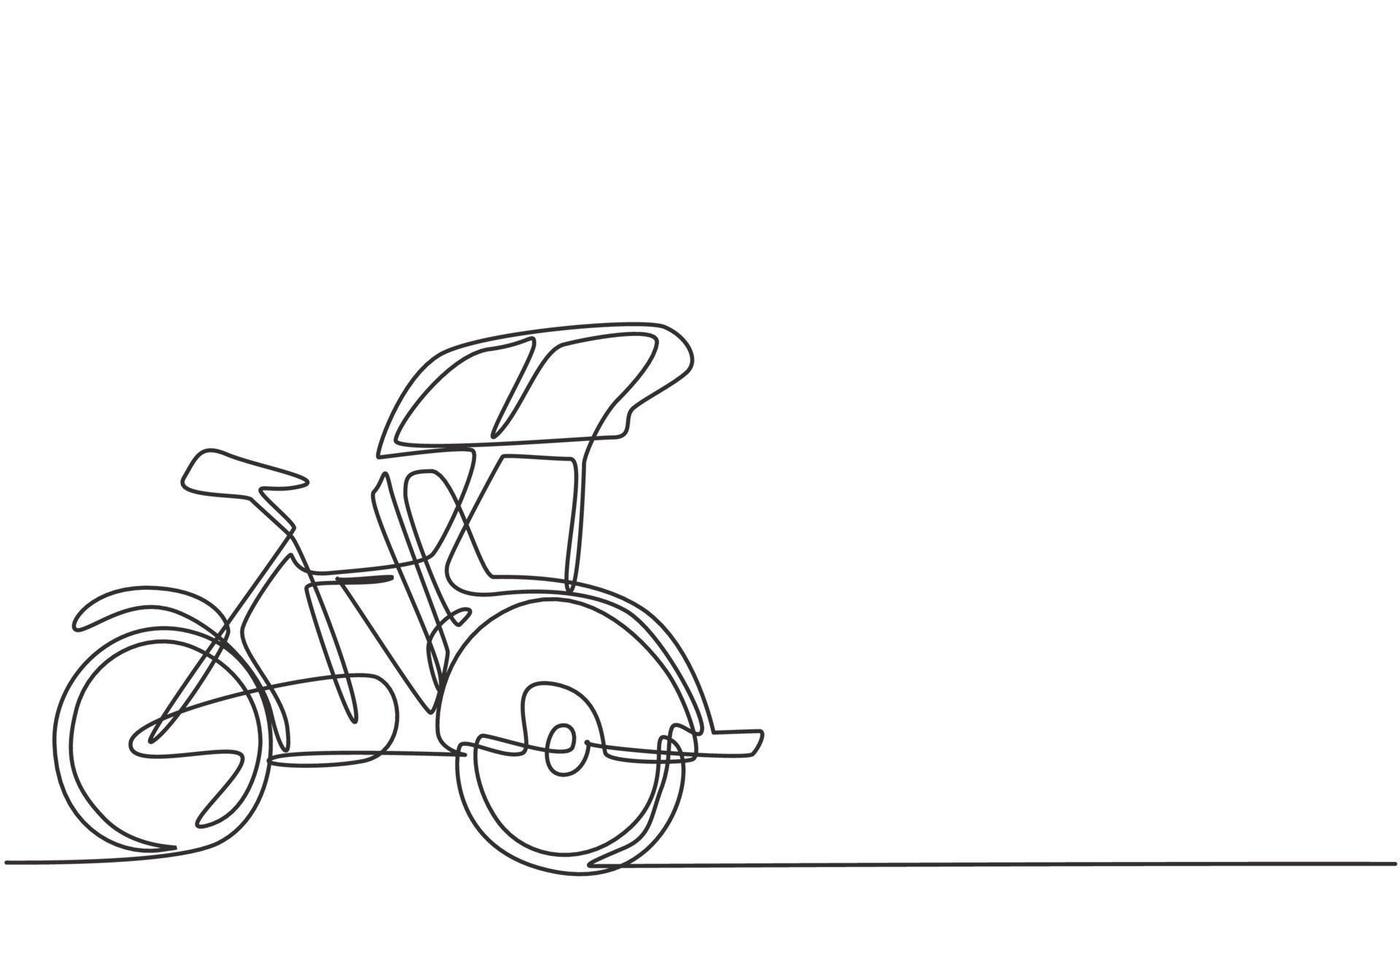 ononderbroken één lijntekening fietstaxi wordt gezien vanaf de zijkant met drie wielen en de voorste passagiersstoel en de bedieningselementen van de bestuurder aan de achterzijde. enkele lijn tekenen ontwerp vector grafische afbeelding.